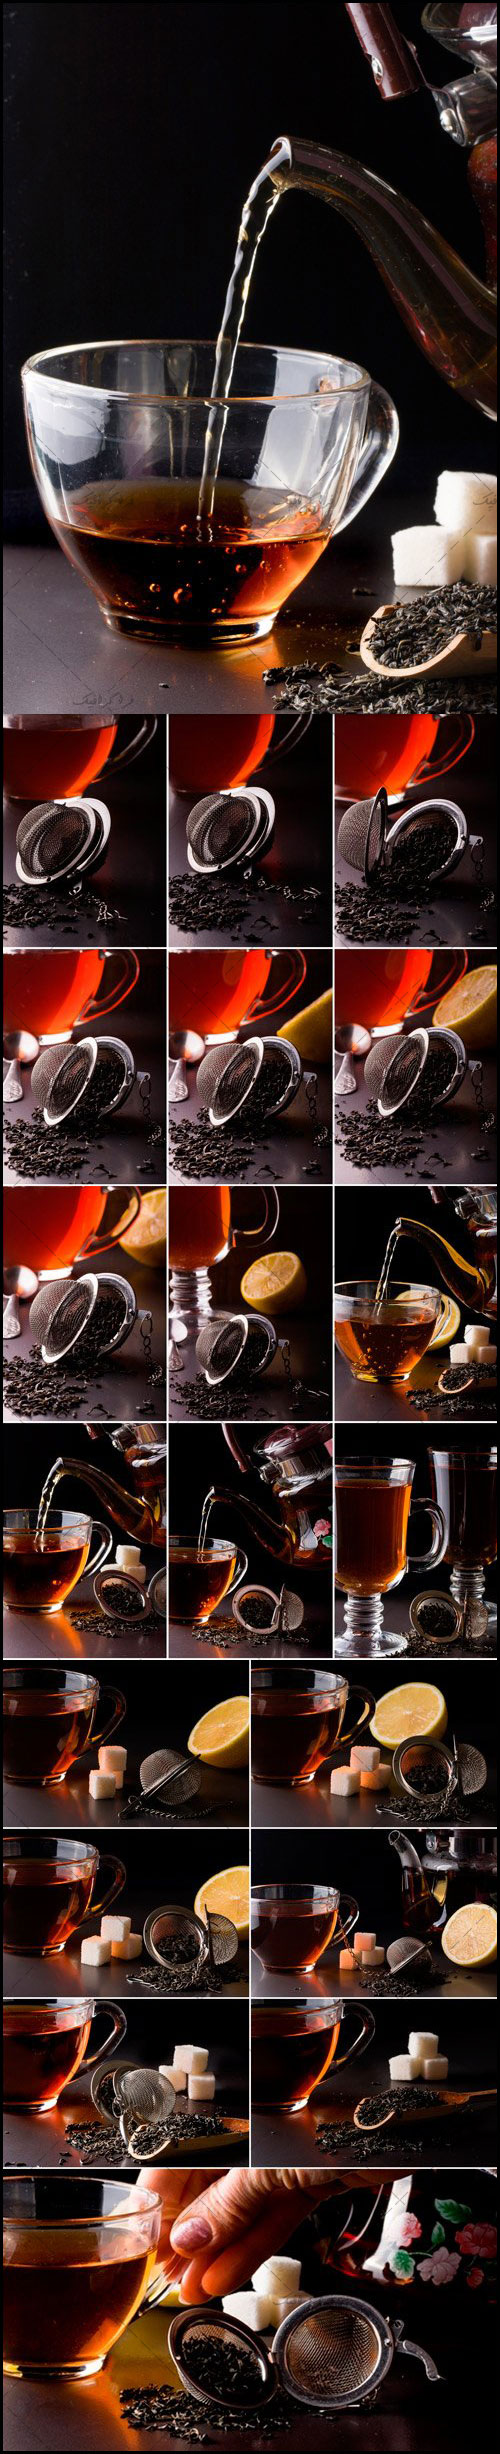 دانلود تصاویر استوک چای و قوری - پس زمینه تیره